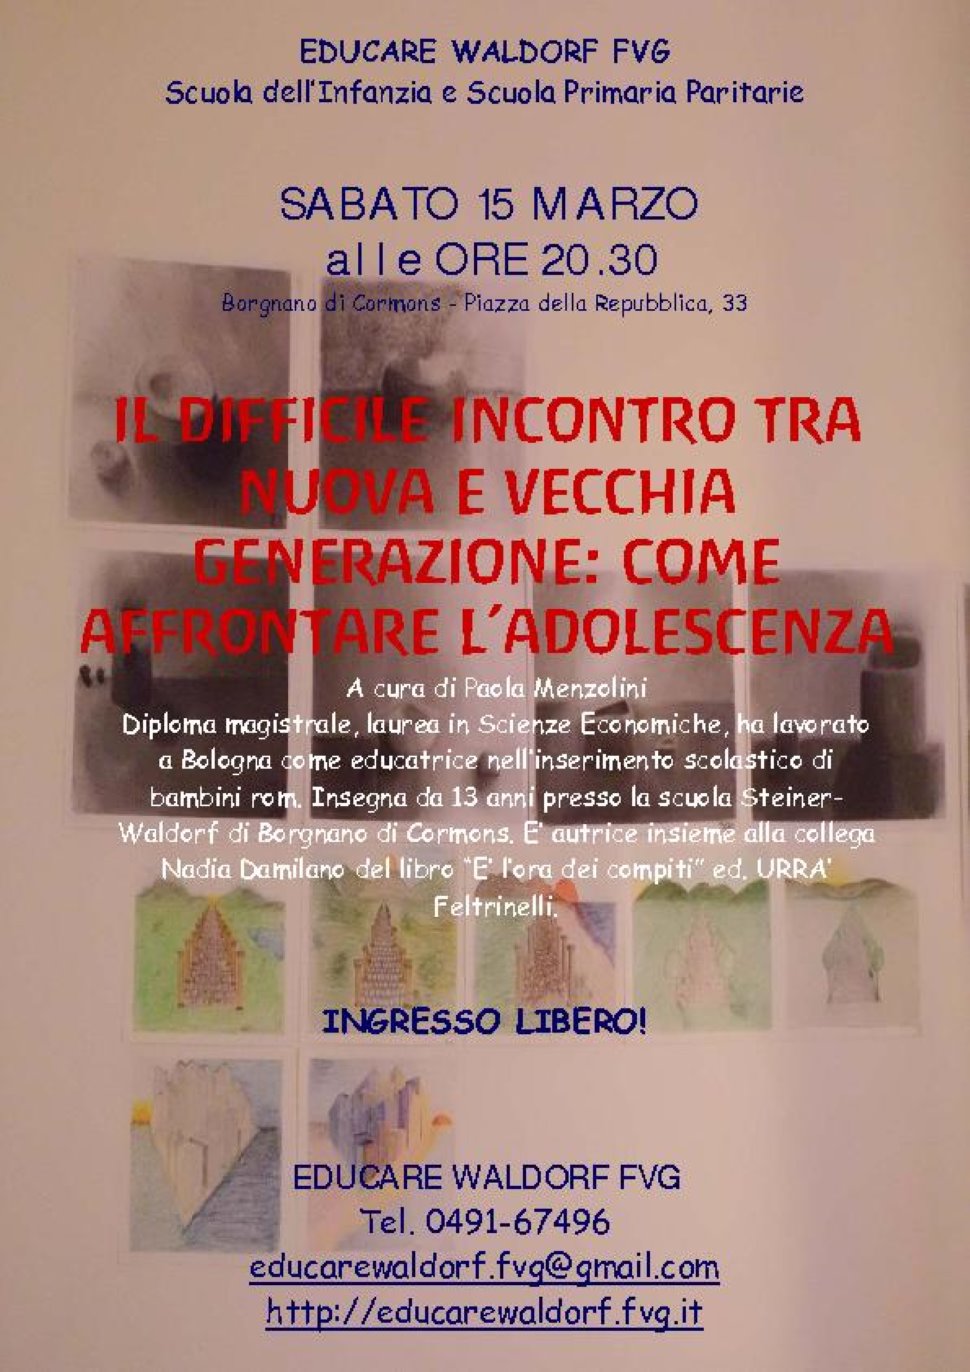 Conferenza a cura di Paola Menzolini